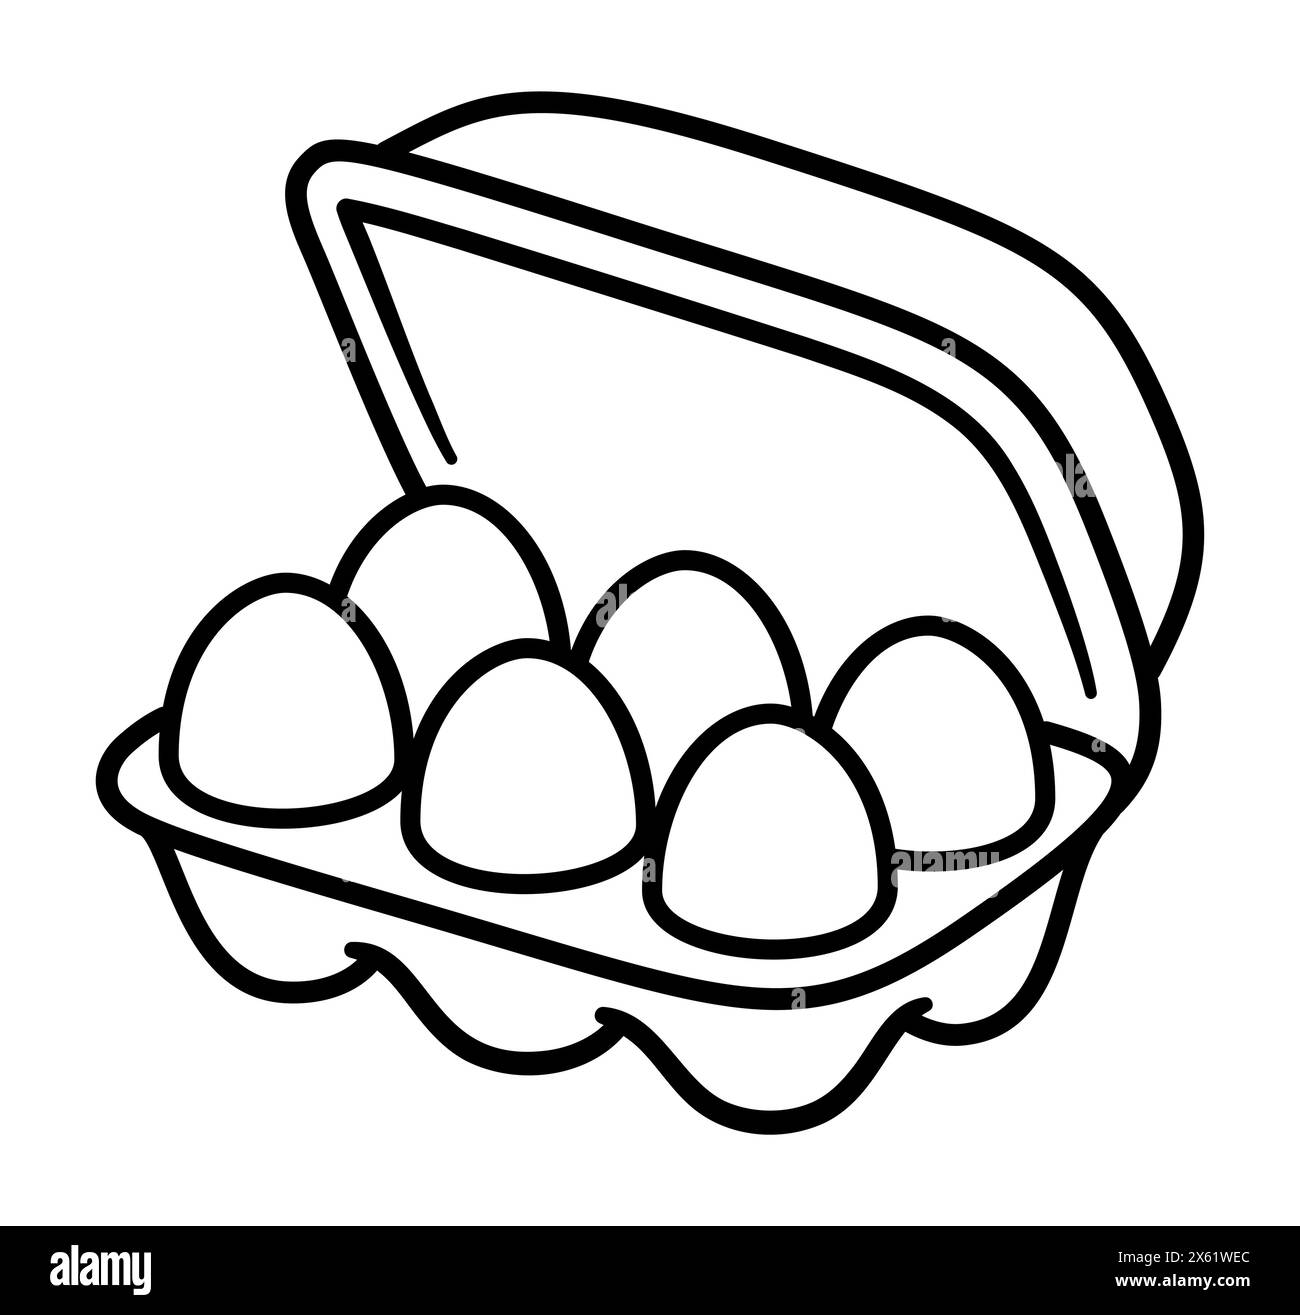 Handgezeichnetes Eierkarton-Doodle-Line-Symbol. Ein halbes Dutzend Eierbehälter. Einfache Zeichentrickzeichnung, Vektor-ClipArt-Illustration. Stock Vektor